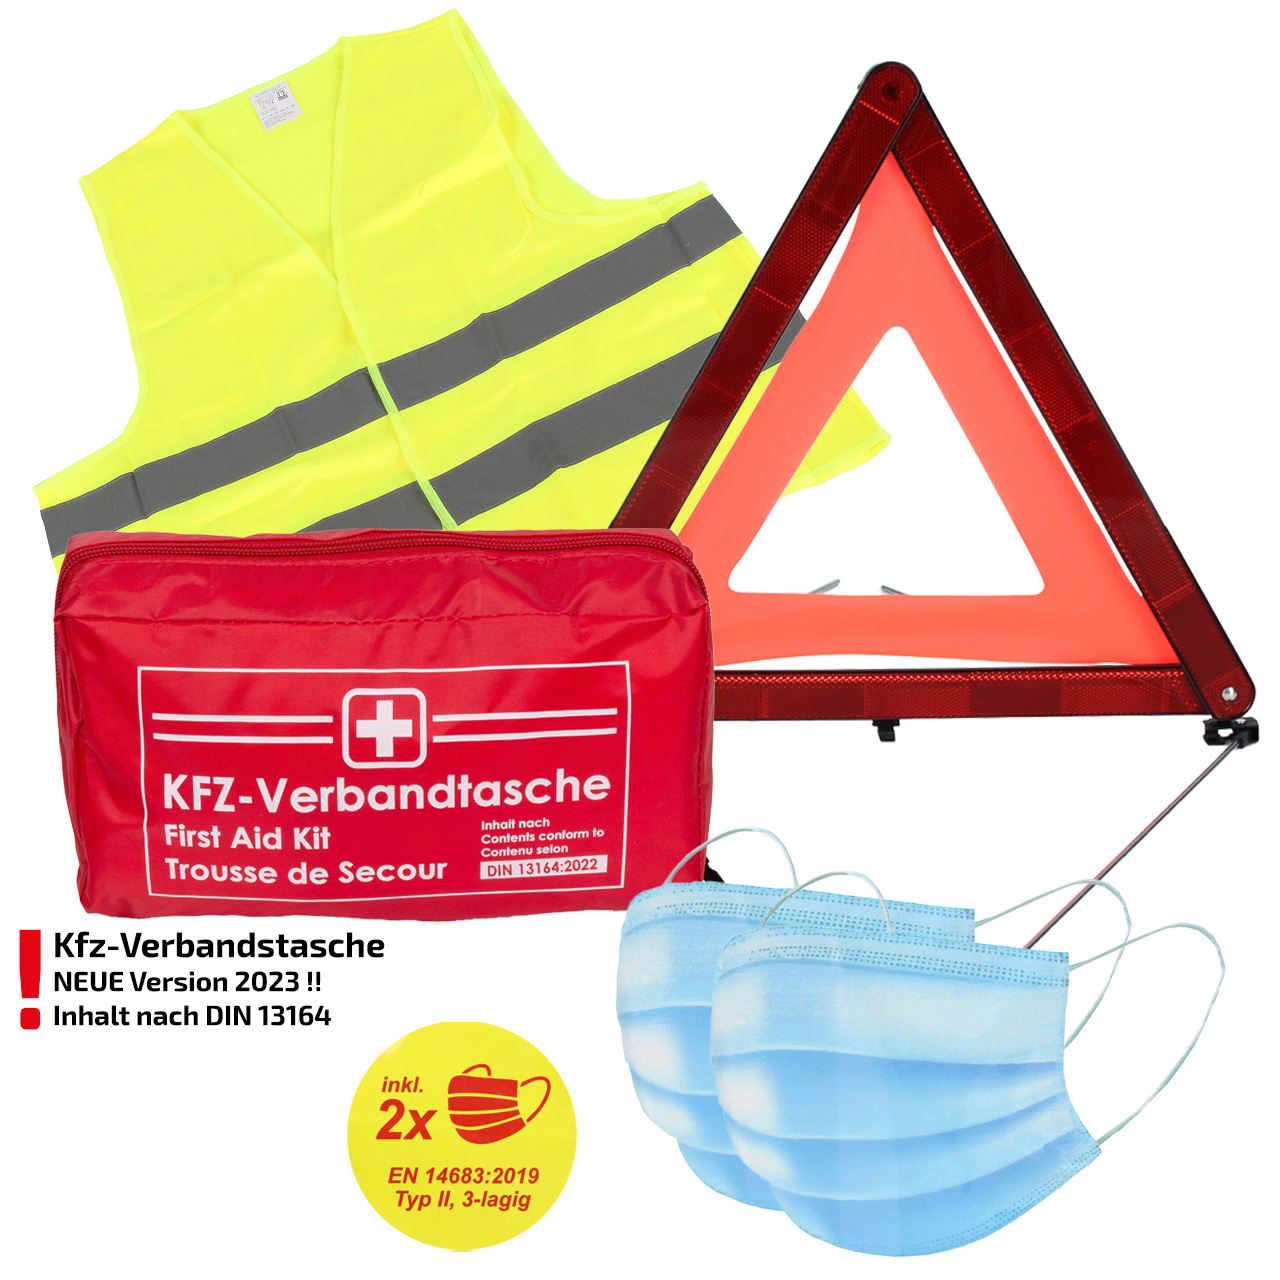 Verbandtasche Erste-Hilfe DIN13164-2022 (MHD 08.2028) + Warnweste GELB + Warndreieck